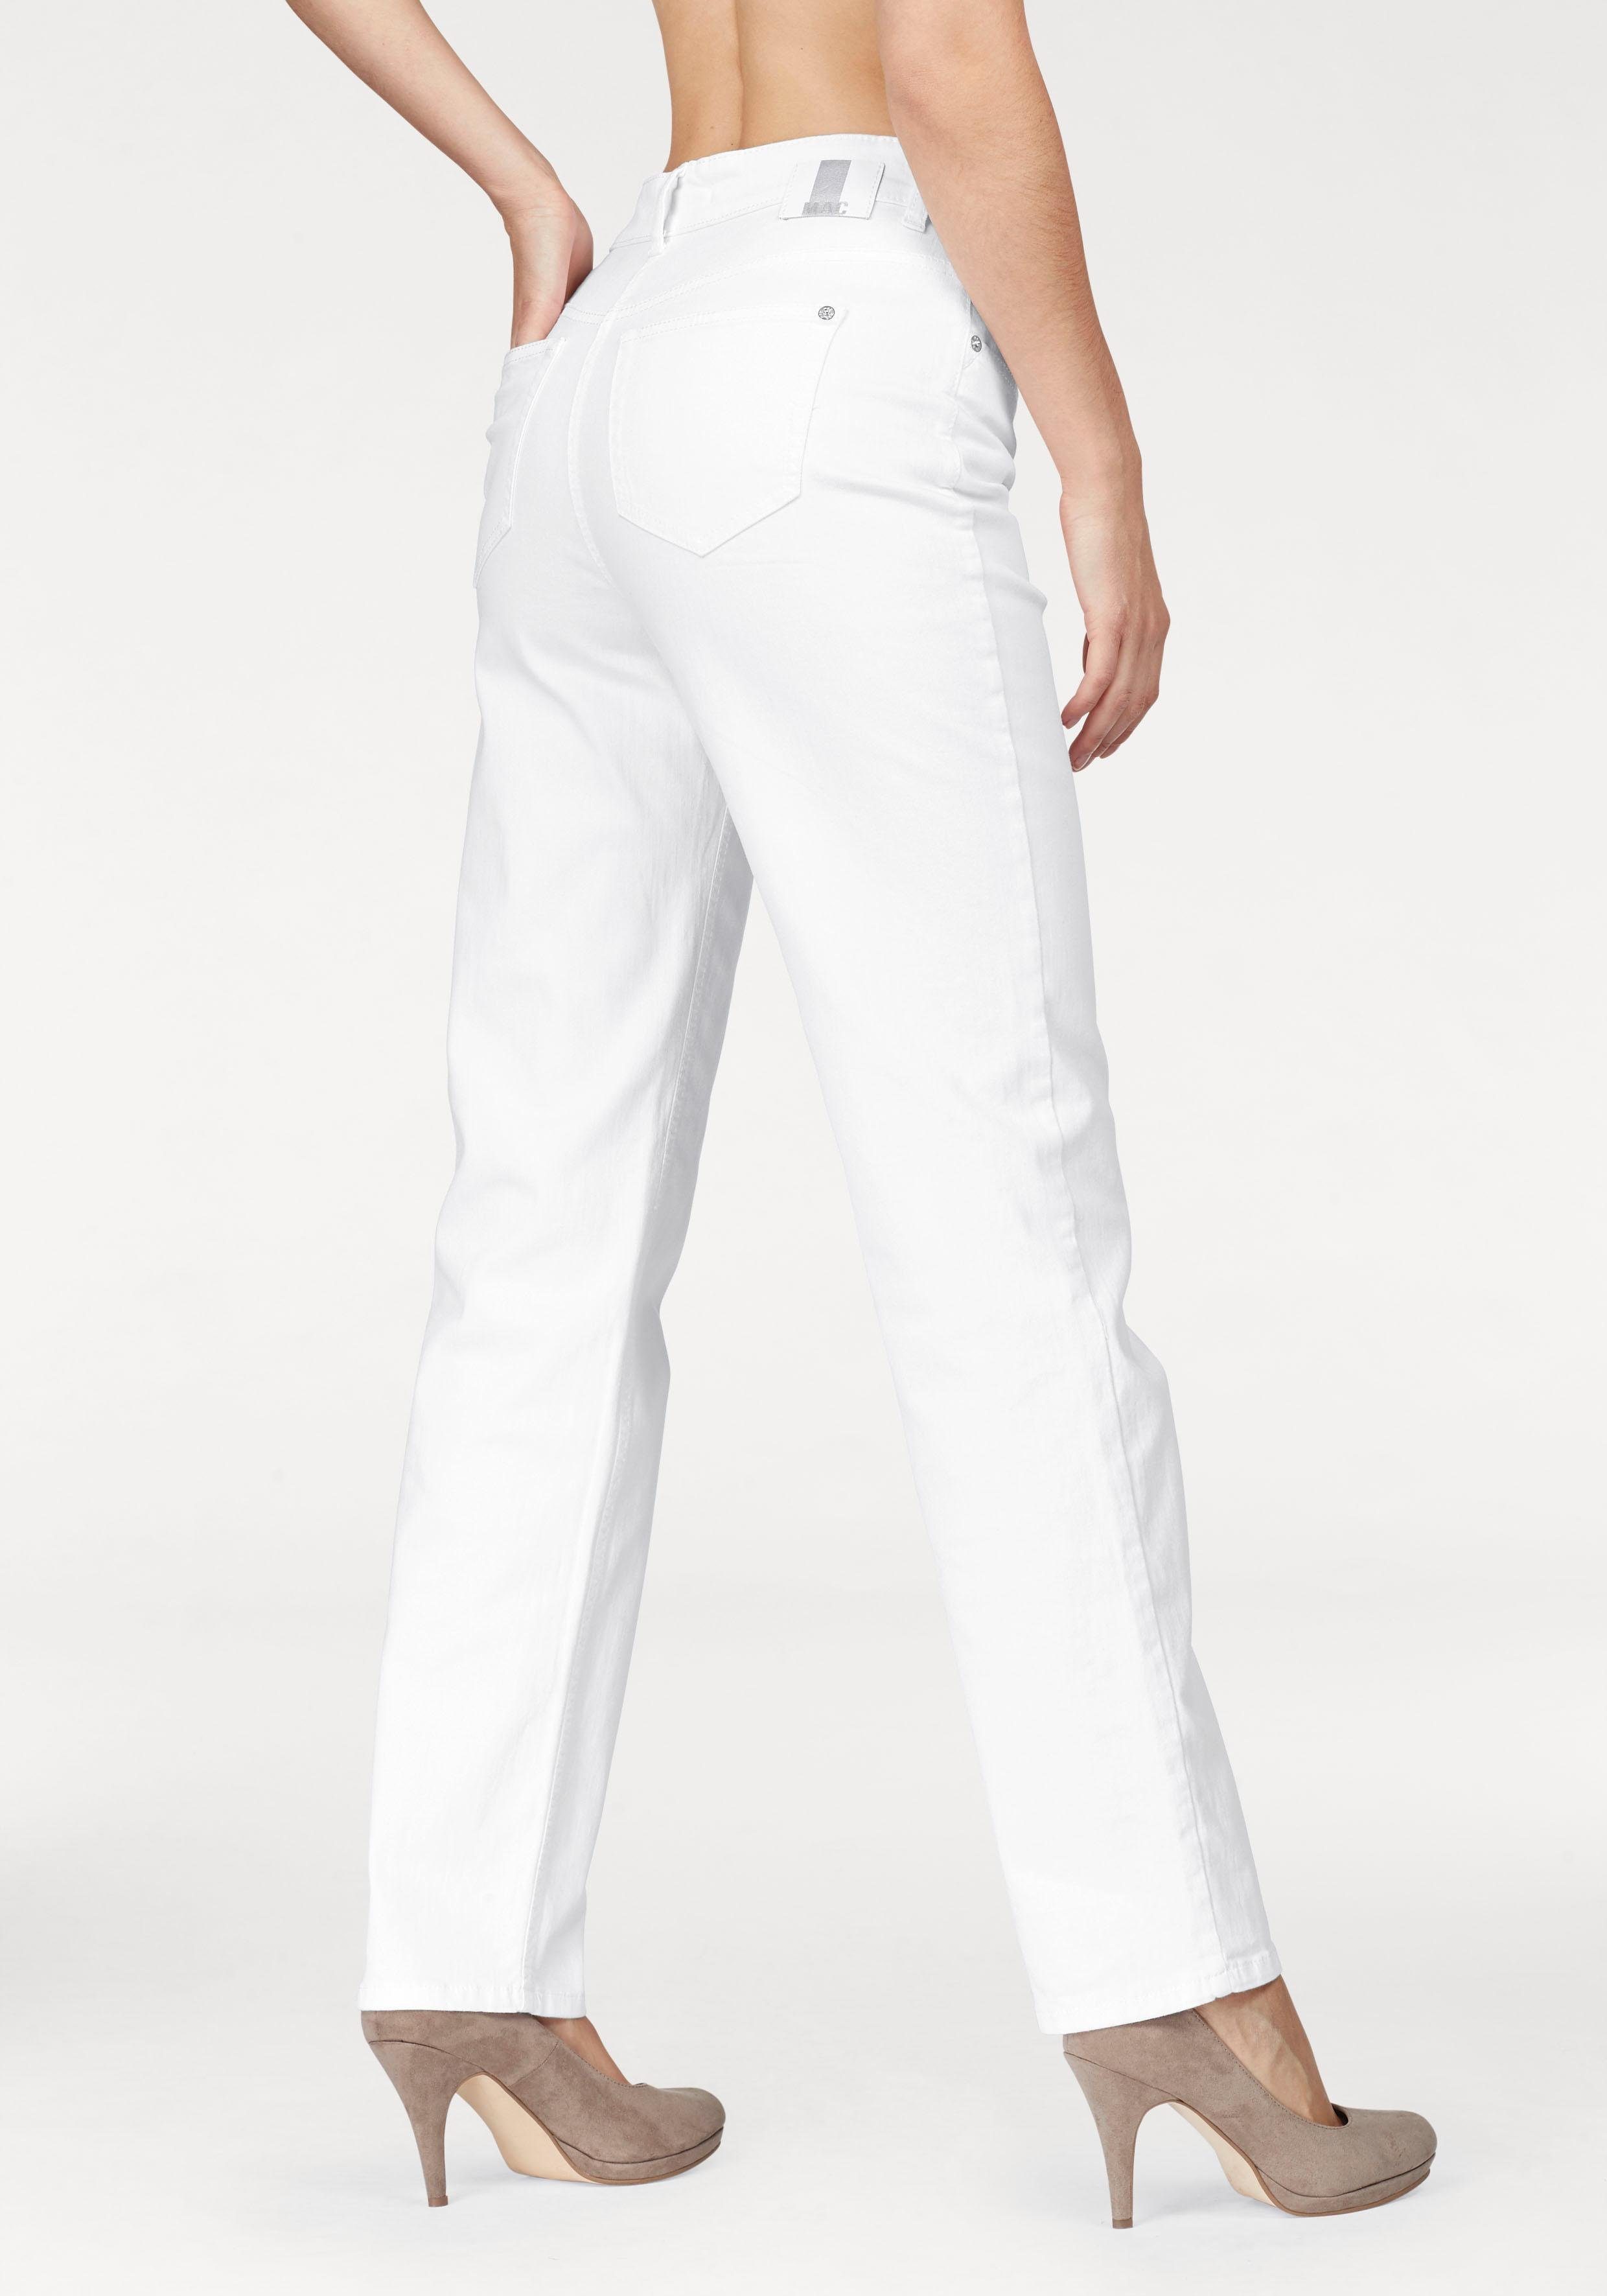 Weiße High Waist Jeans für Damen online kaufen | OTTO